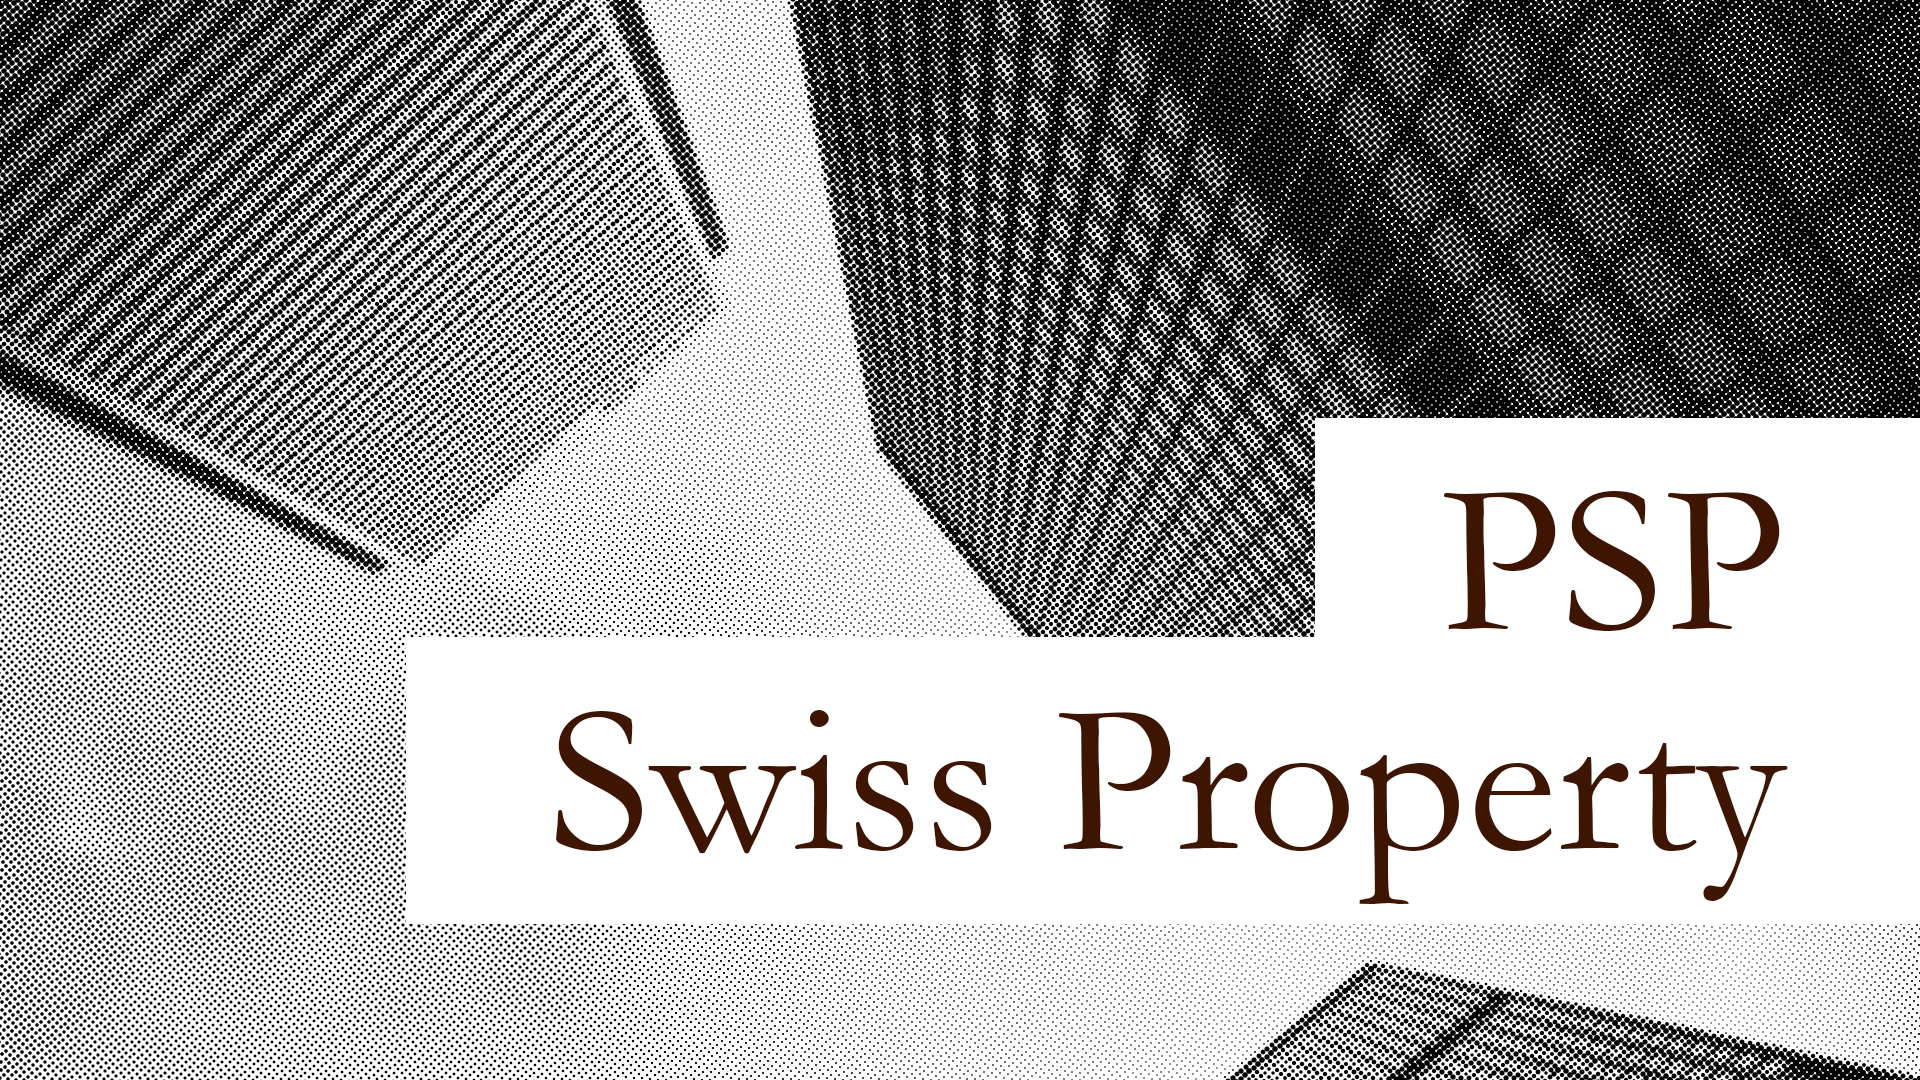 Diversifizierung des Wikifolios mit PSP Swiss Property